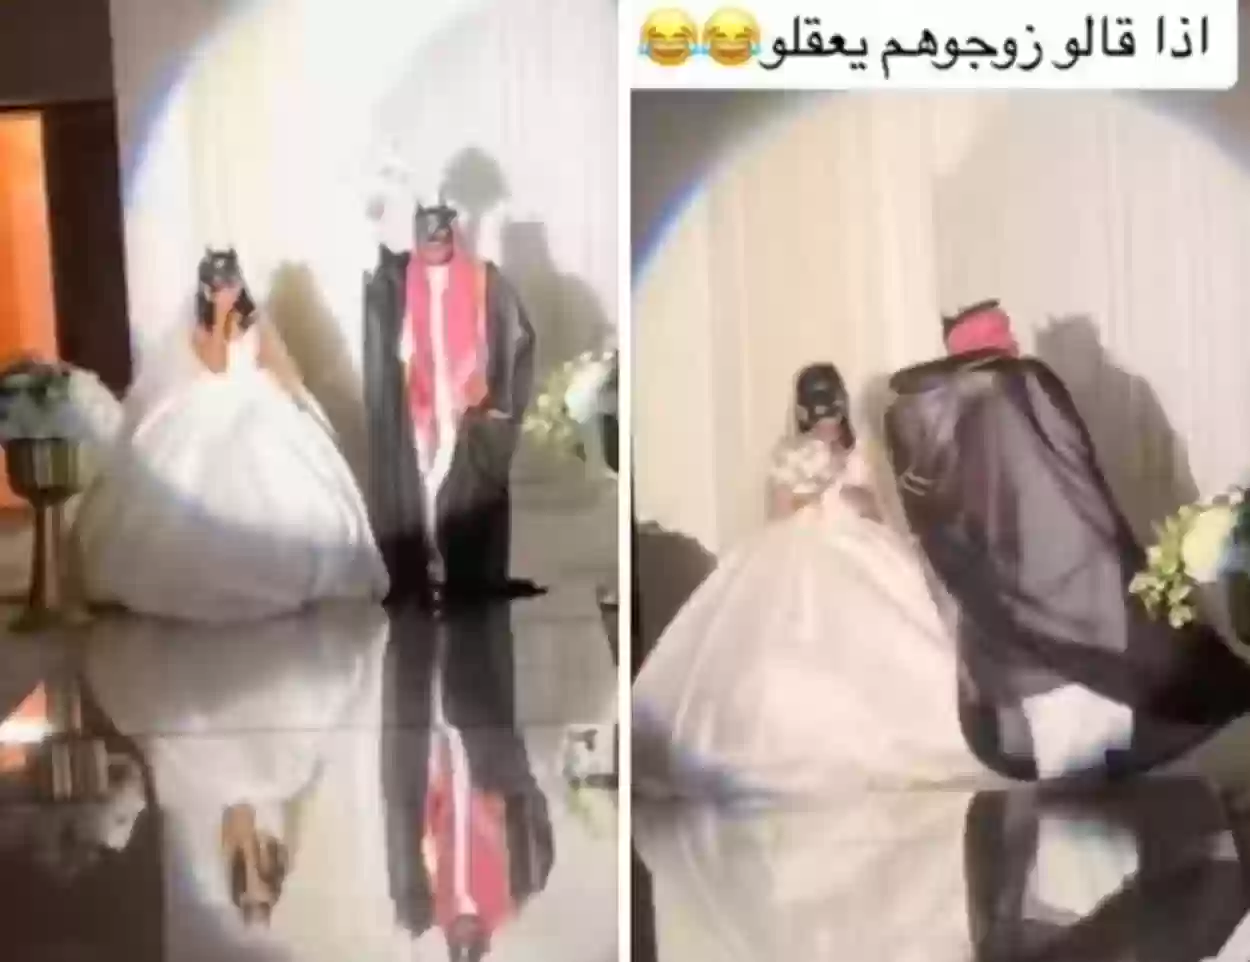 عريس وعروسة سعوديان يحتفلان بطريقة مختلفة أثارت الجدل 